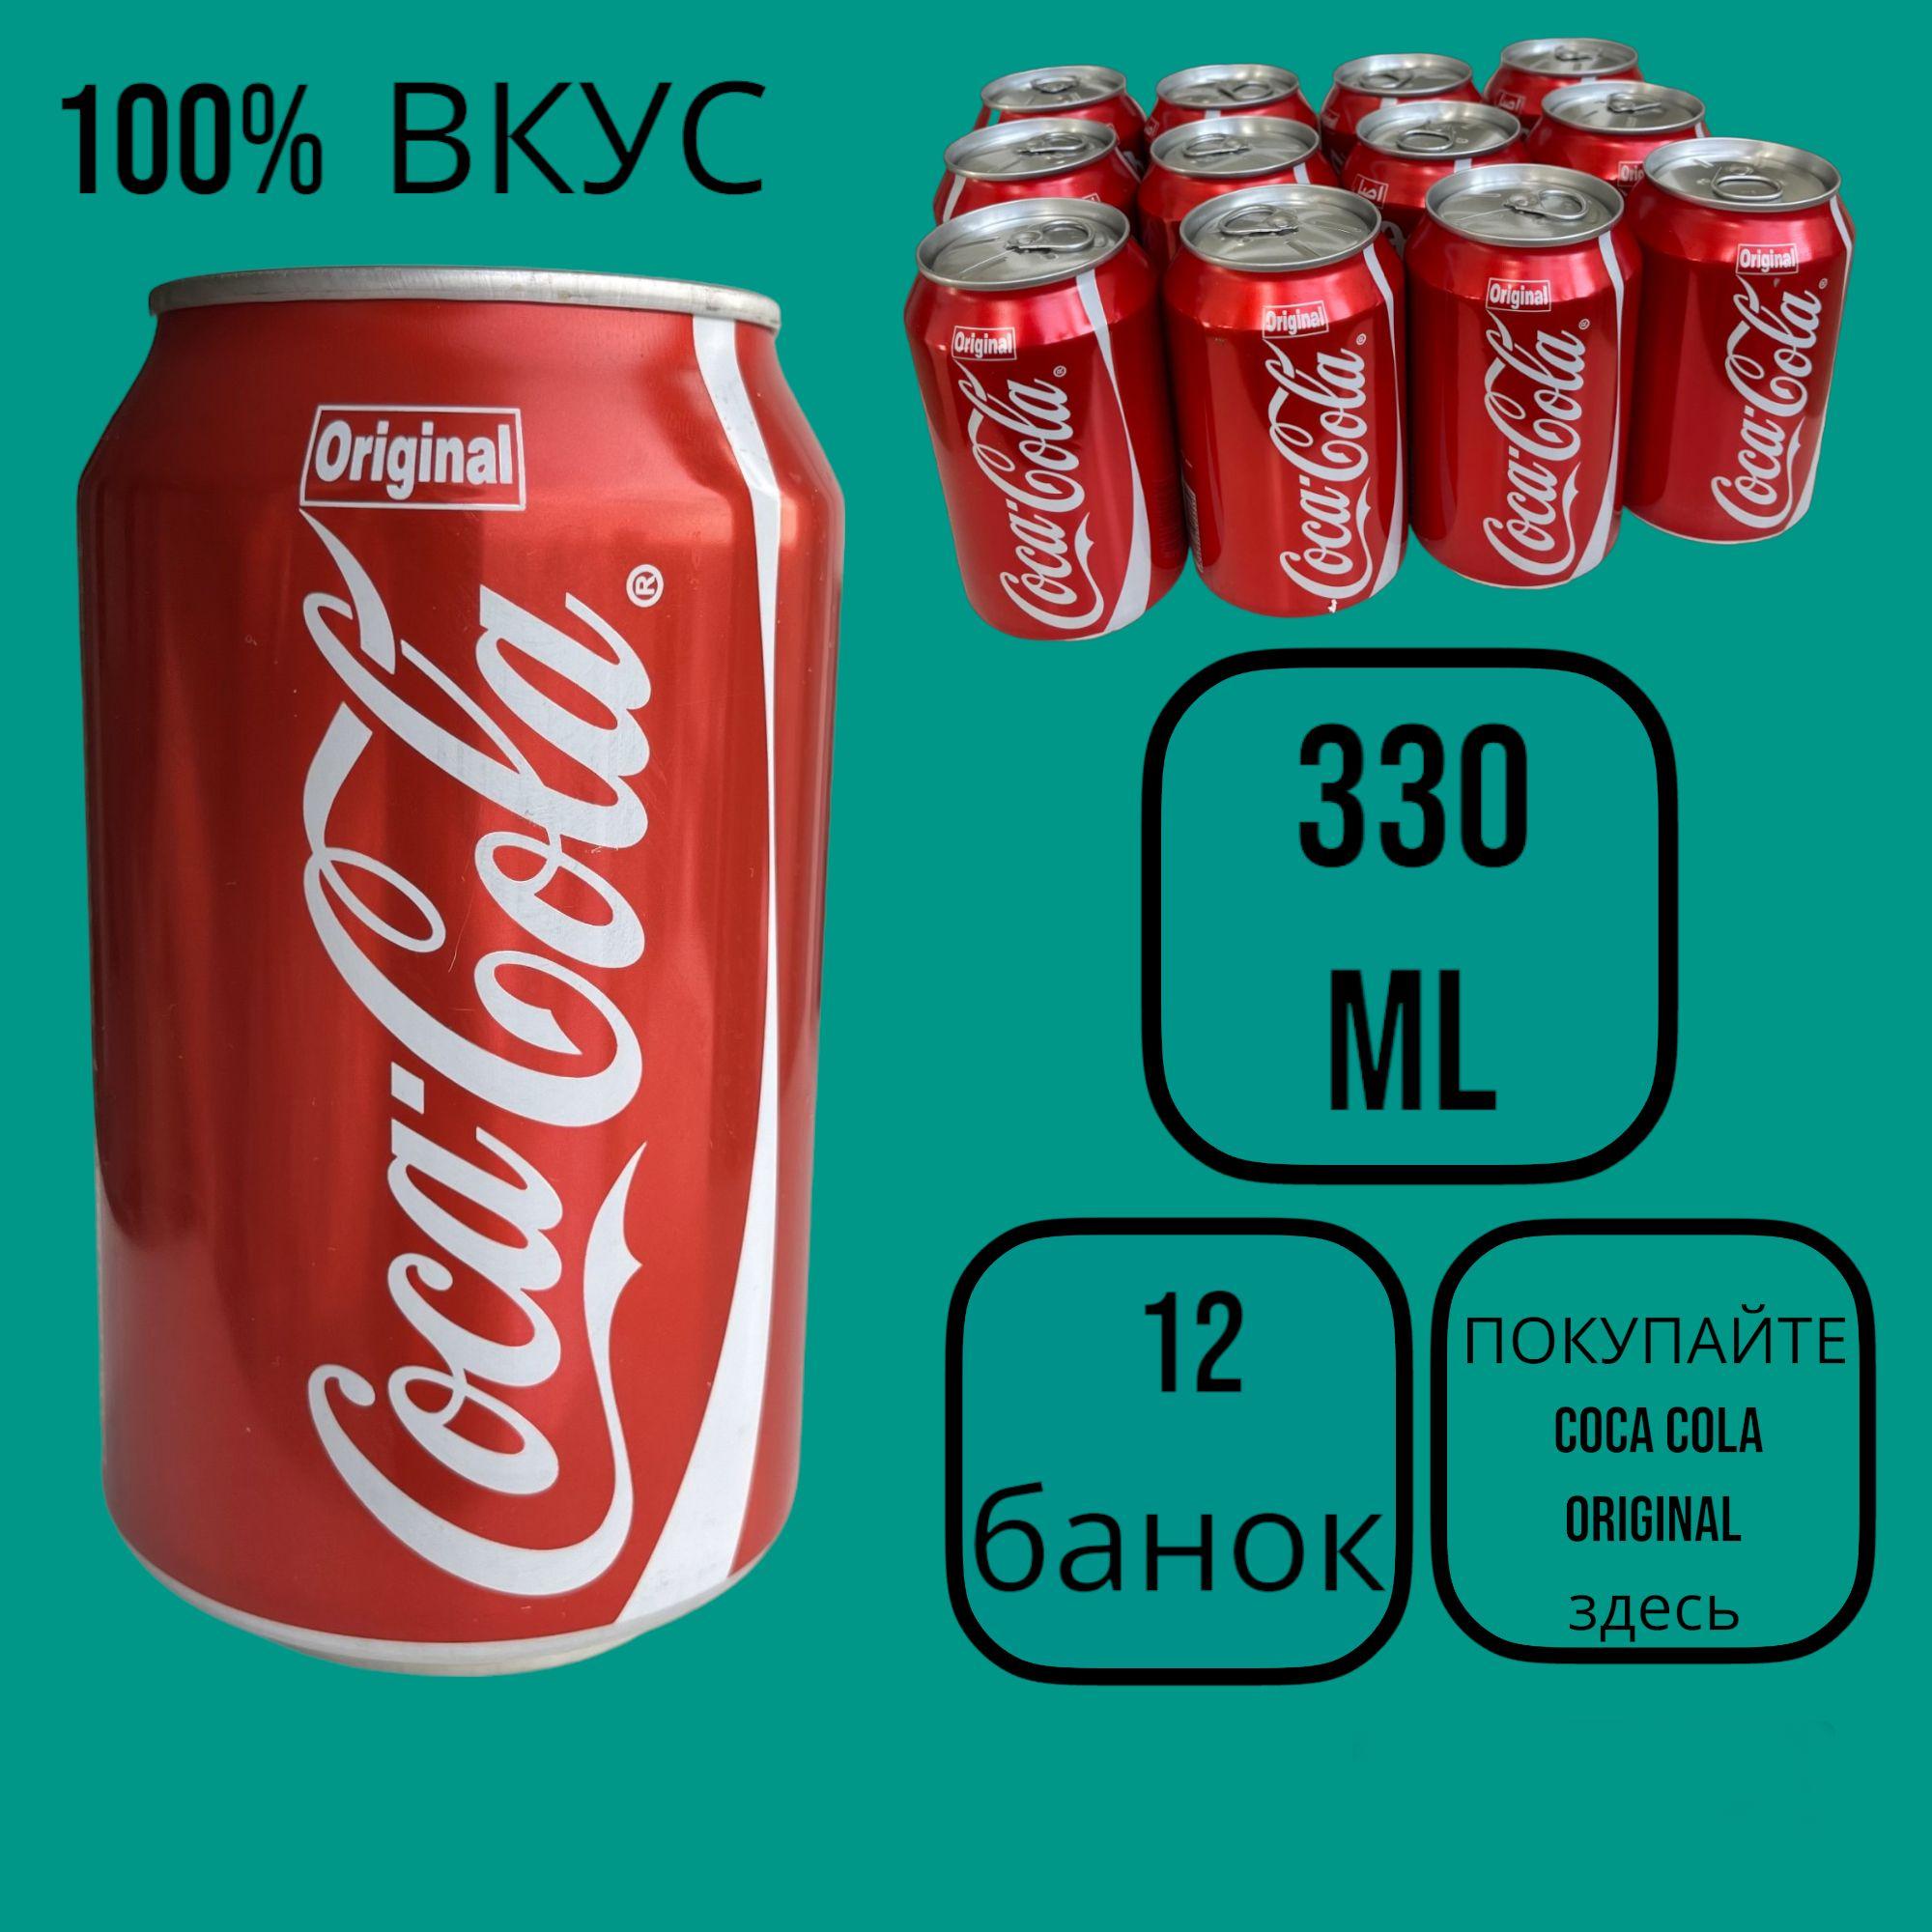 Напиток сильногазированный Соса-Cola Original 0,33л, 12шт.